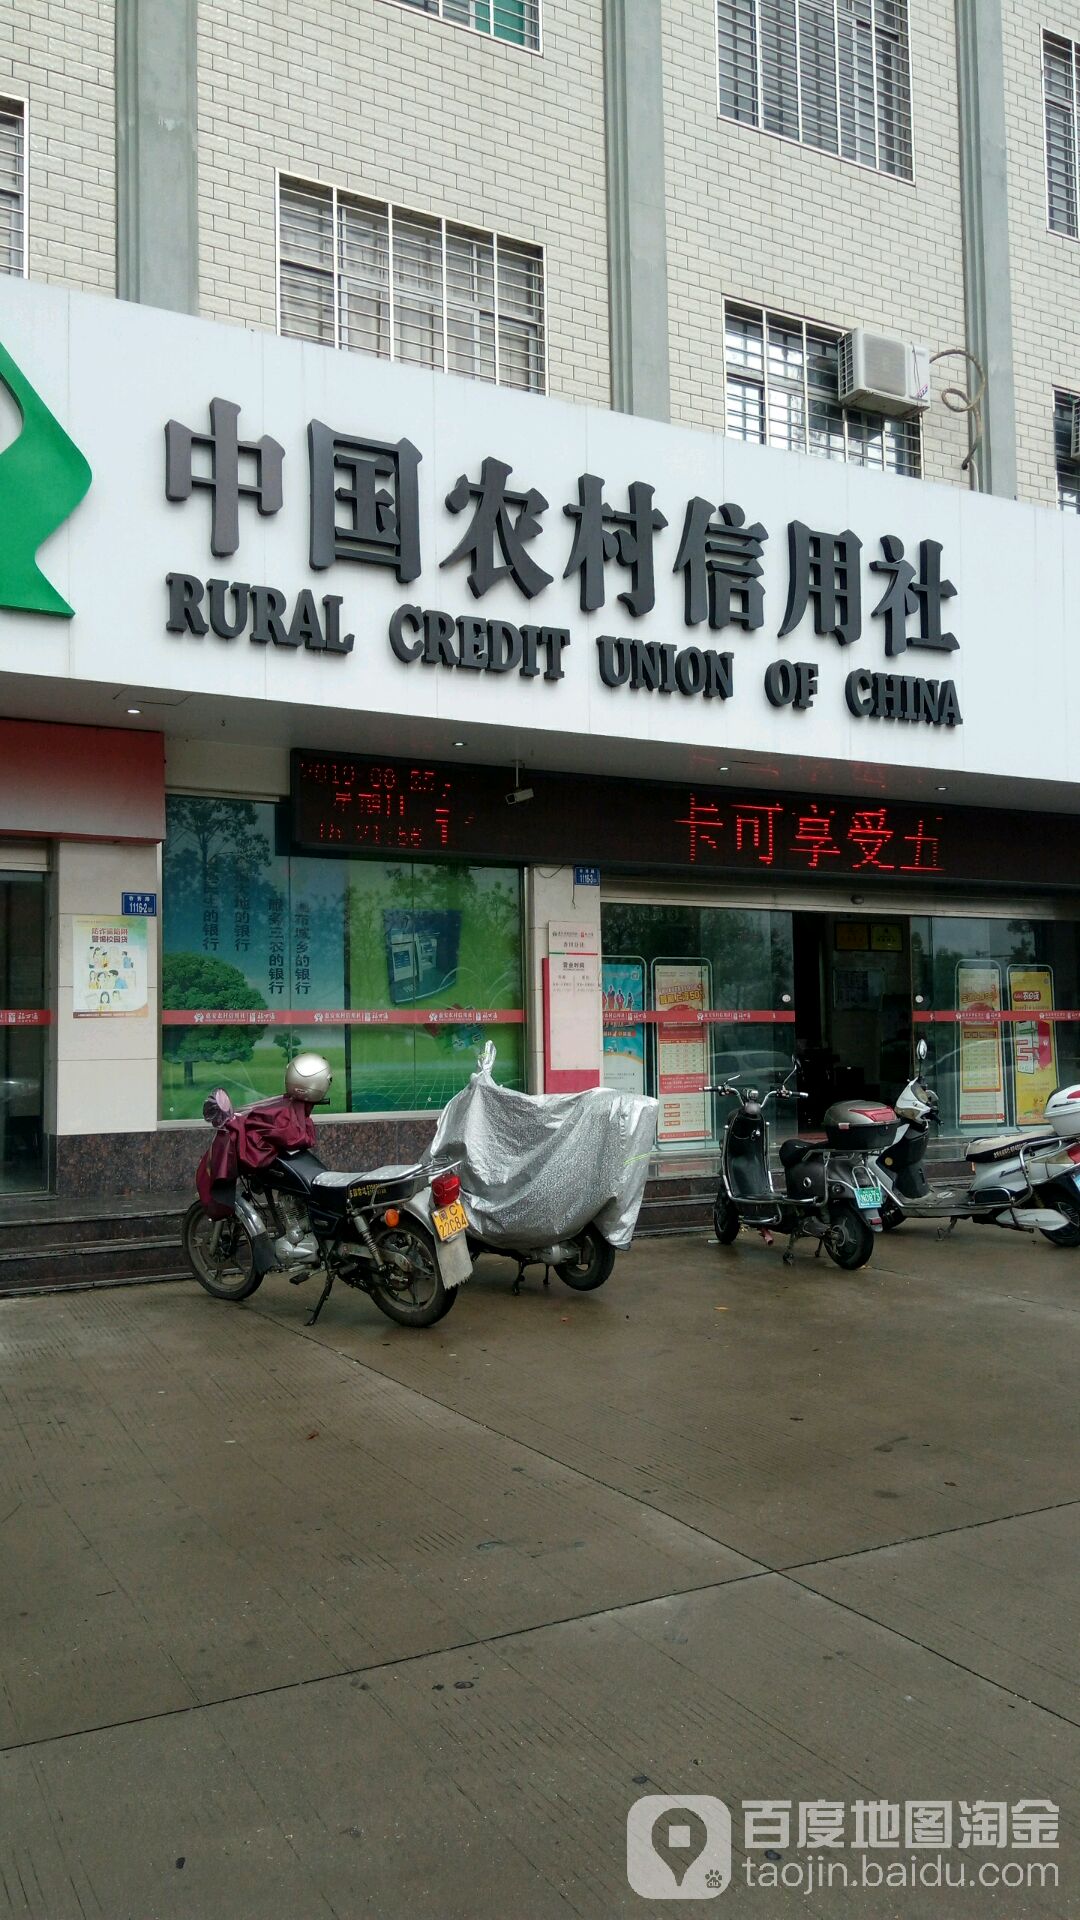 中國農村信用社